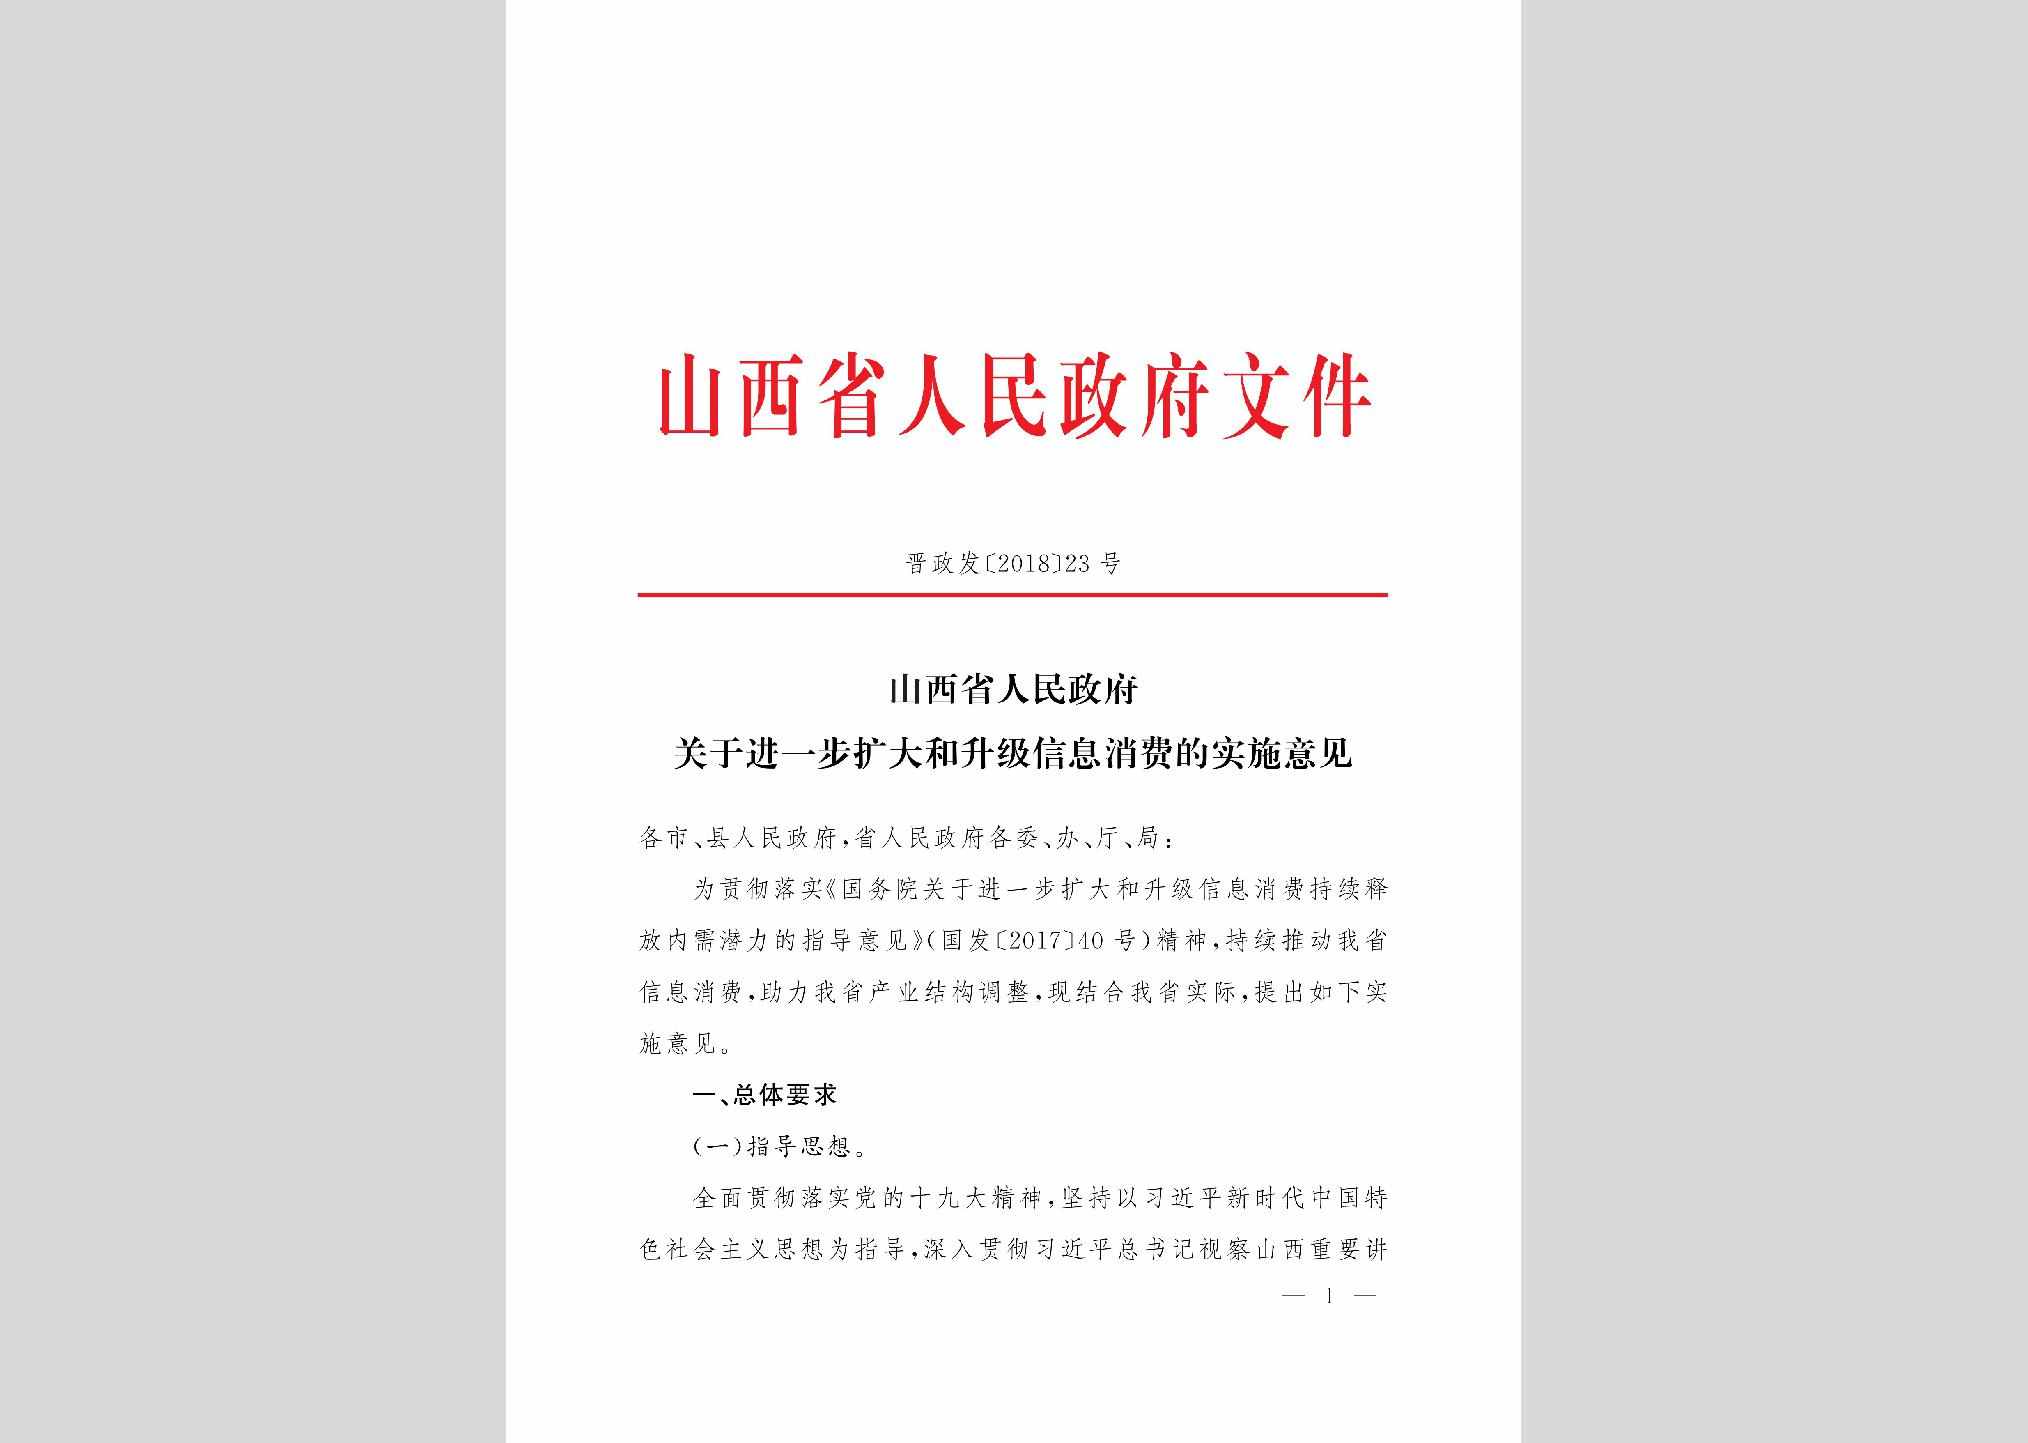 晋政发[2018]23号：山西省人民政府关于进一步扩大和升级信息消费的实施意见